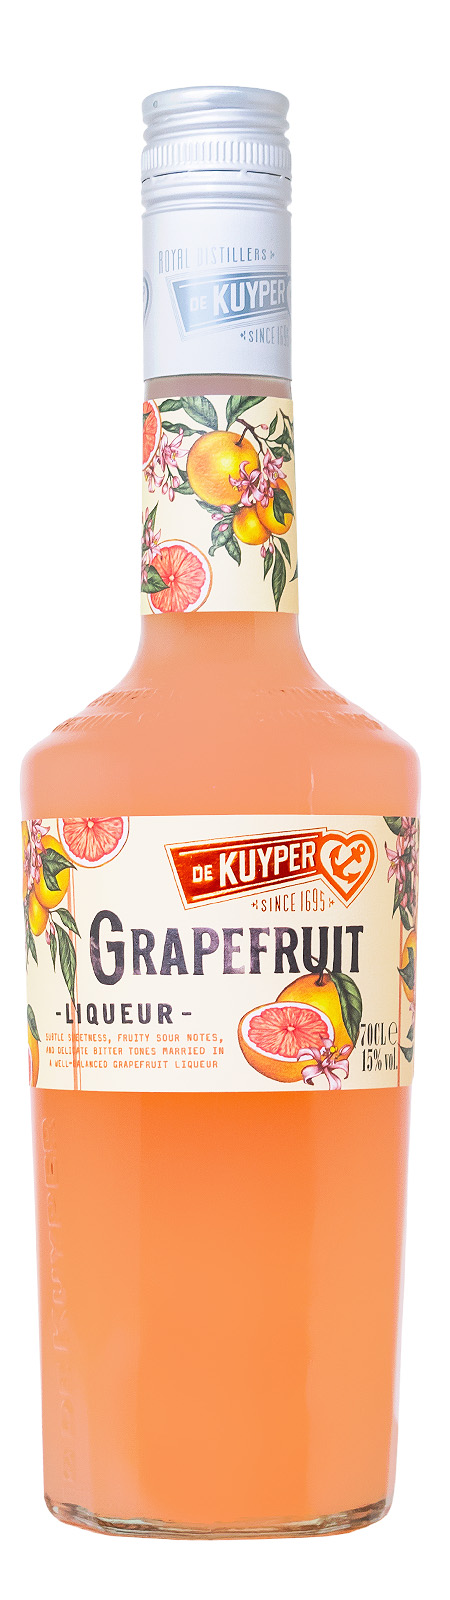 De Kuyper Grapefruit - 0,7L 15% vol